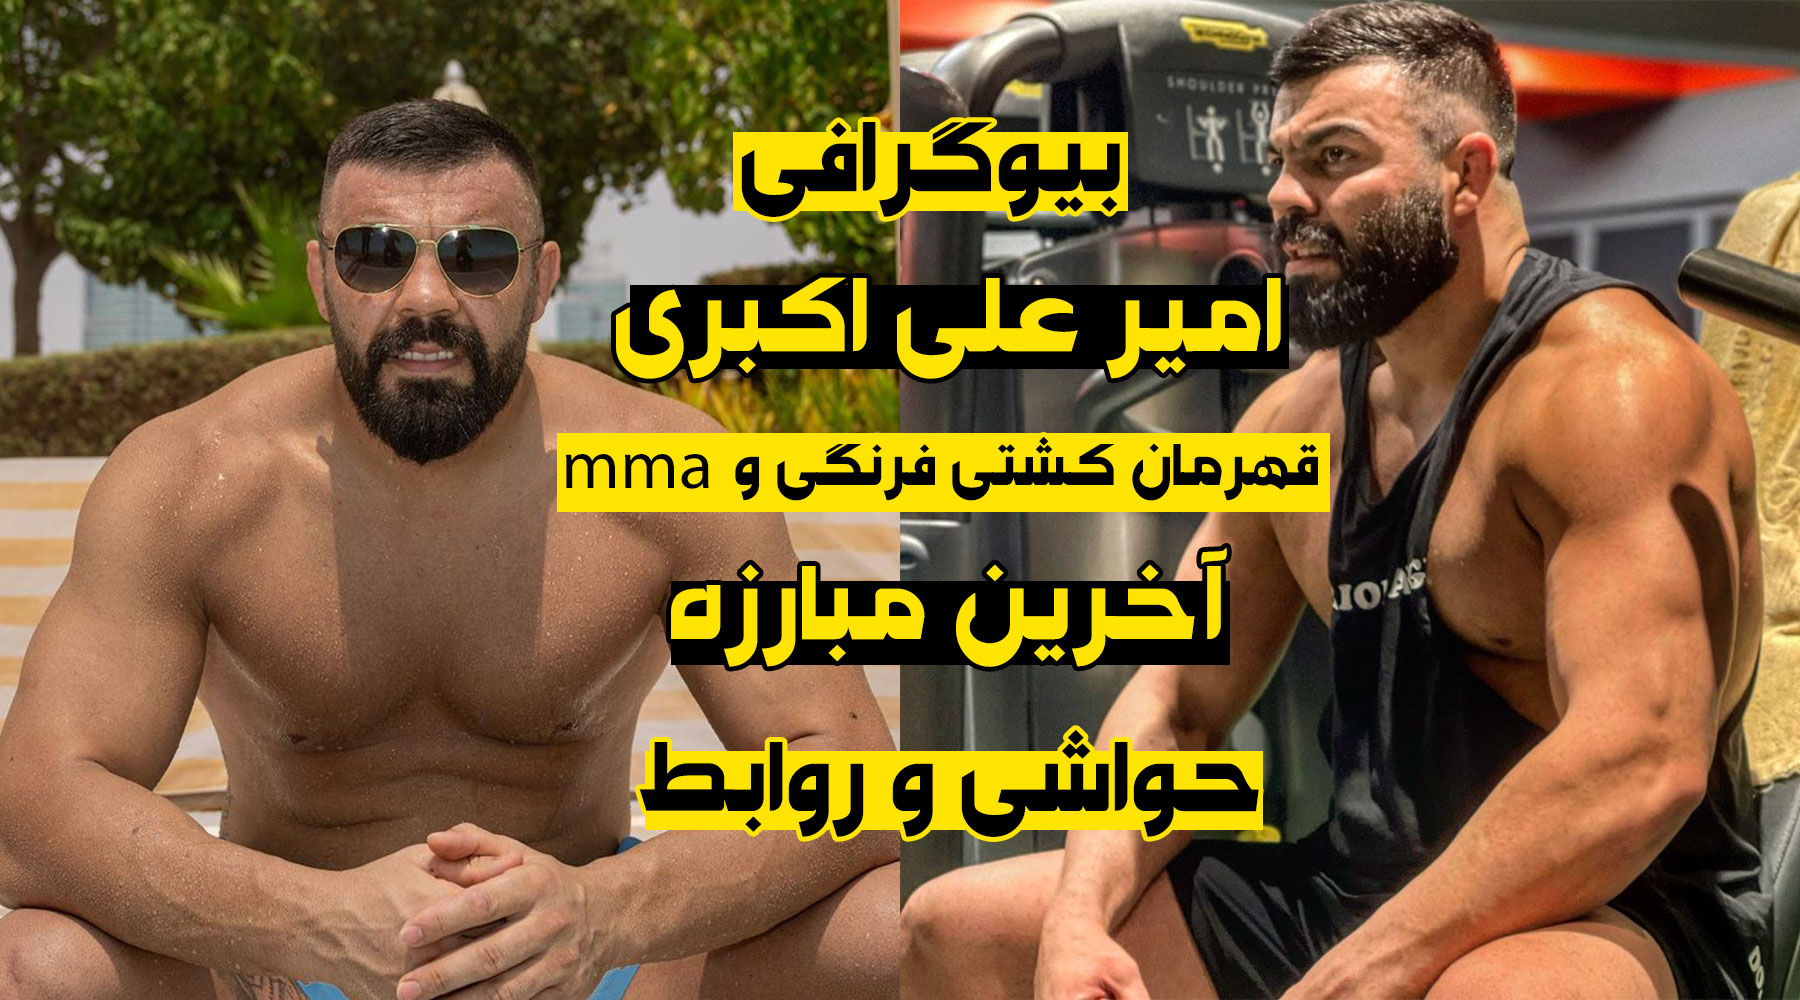 بیوگرافی امیر علی اکبری قهرمان کشتی فرنگی و mma، حواشی و آخرین مبارزه